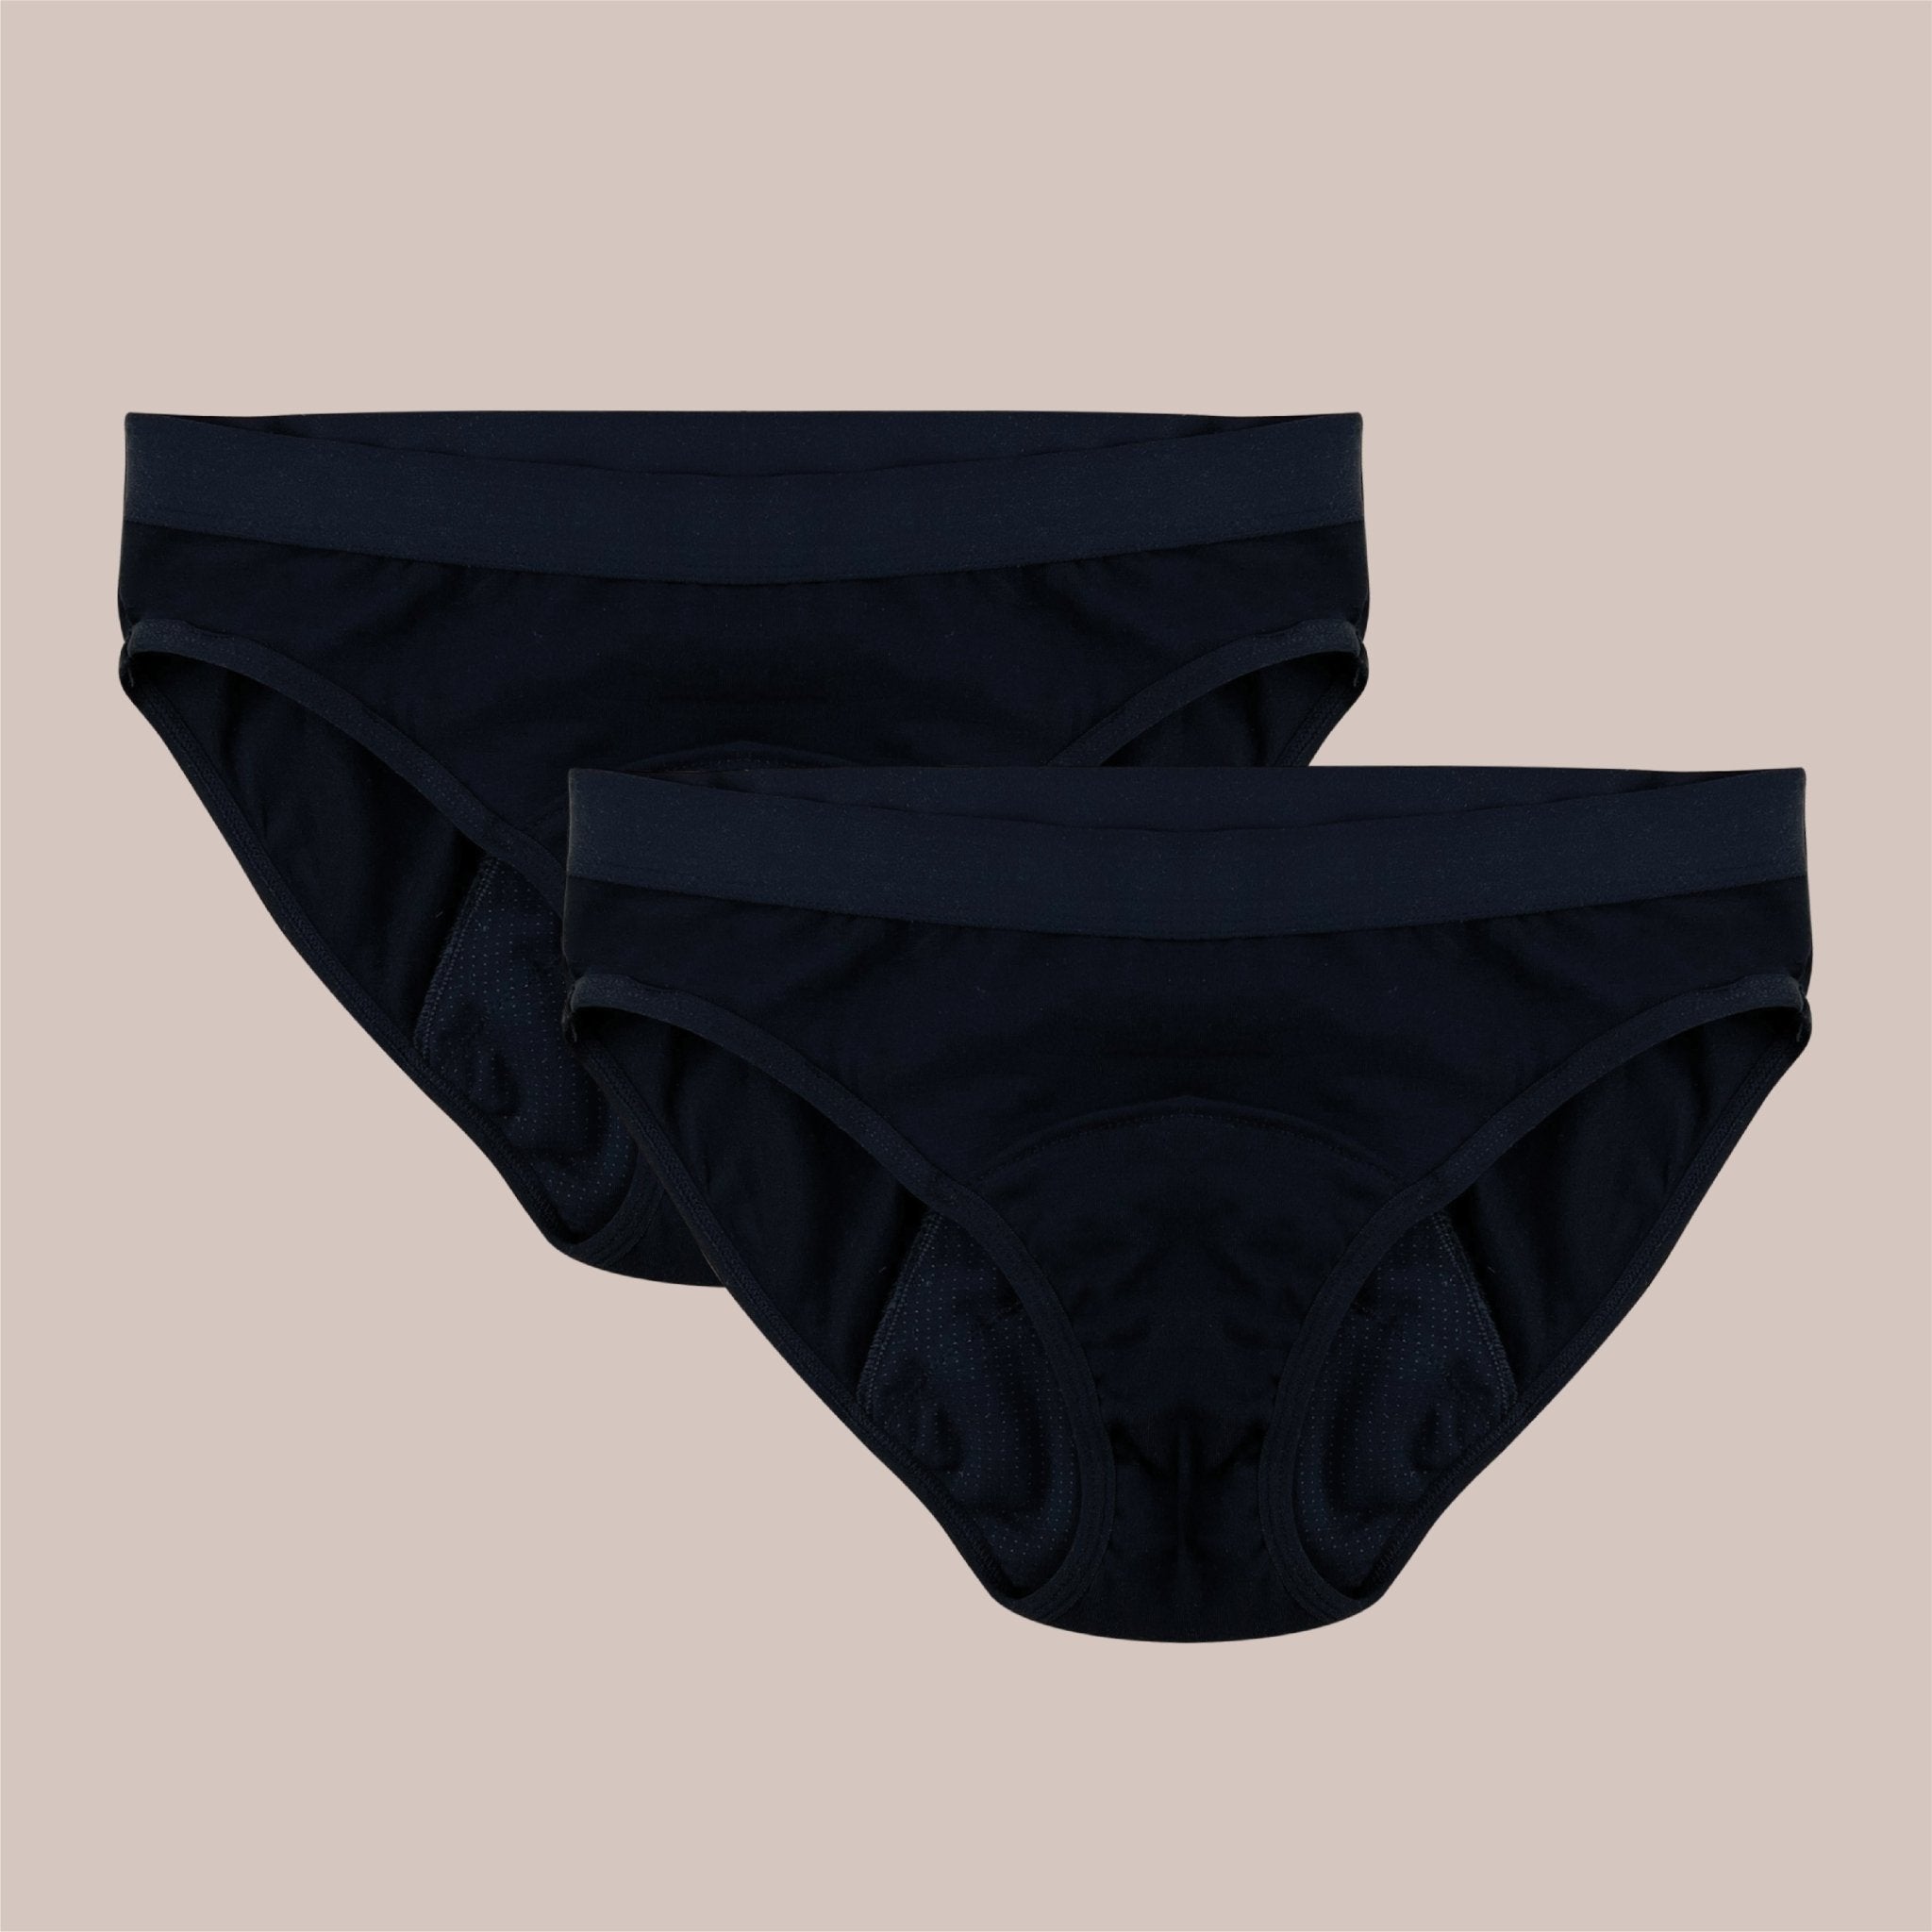 Period Underwear